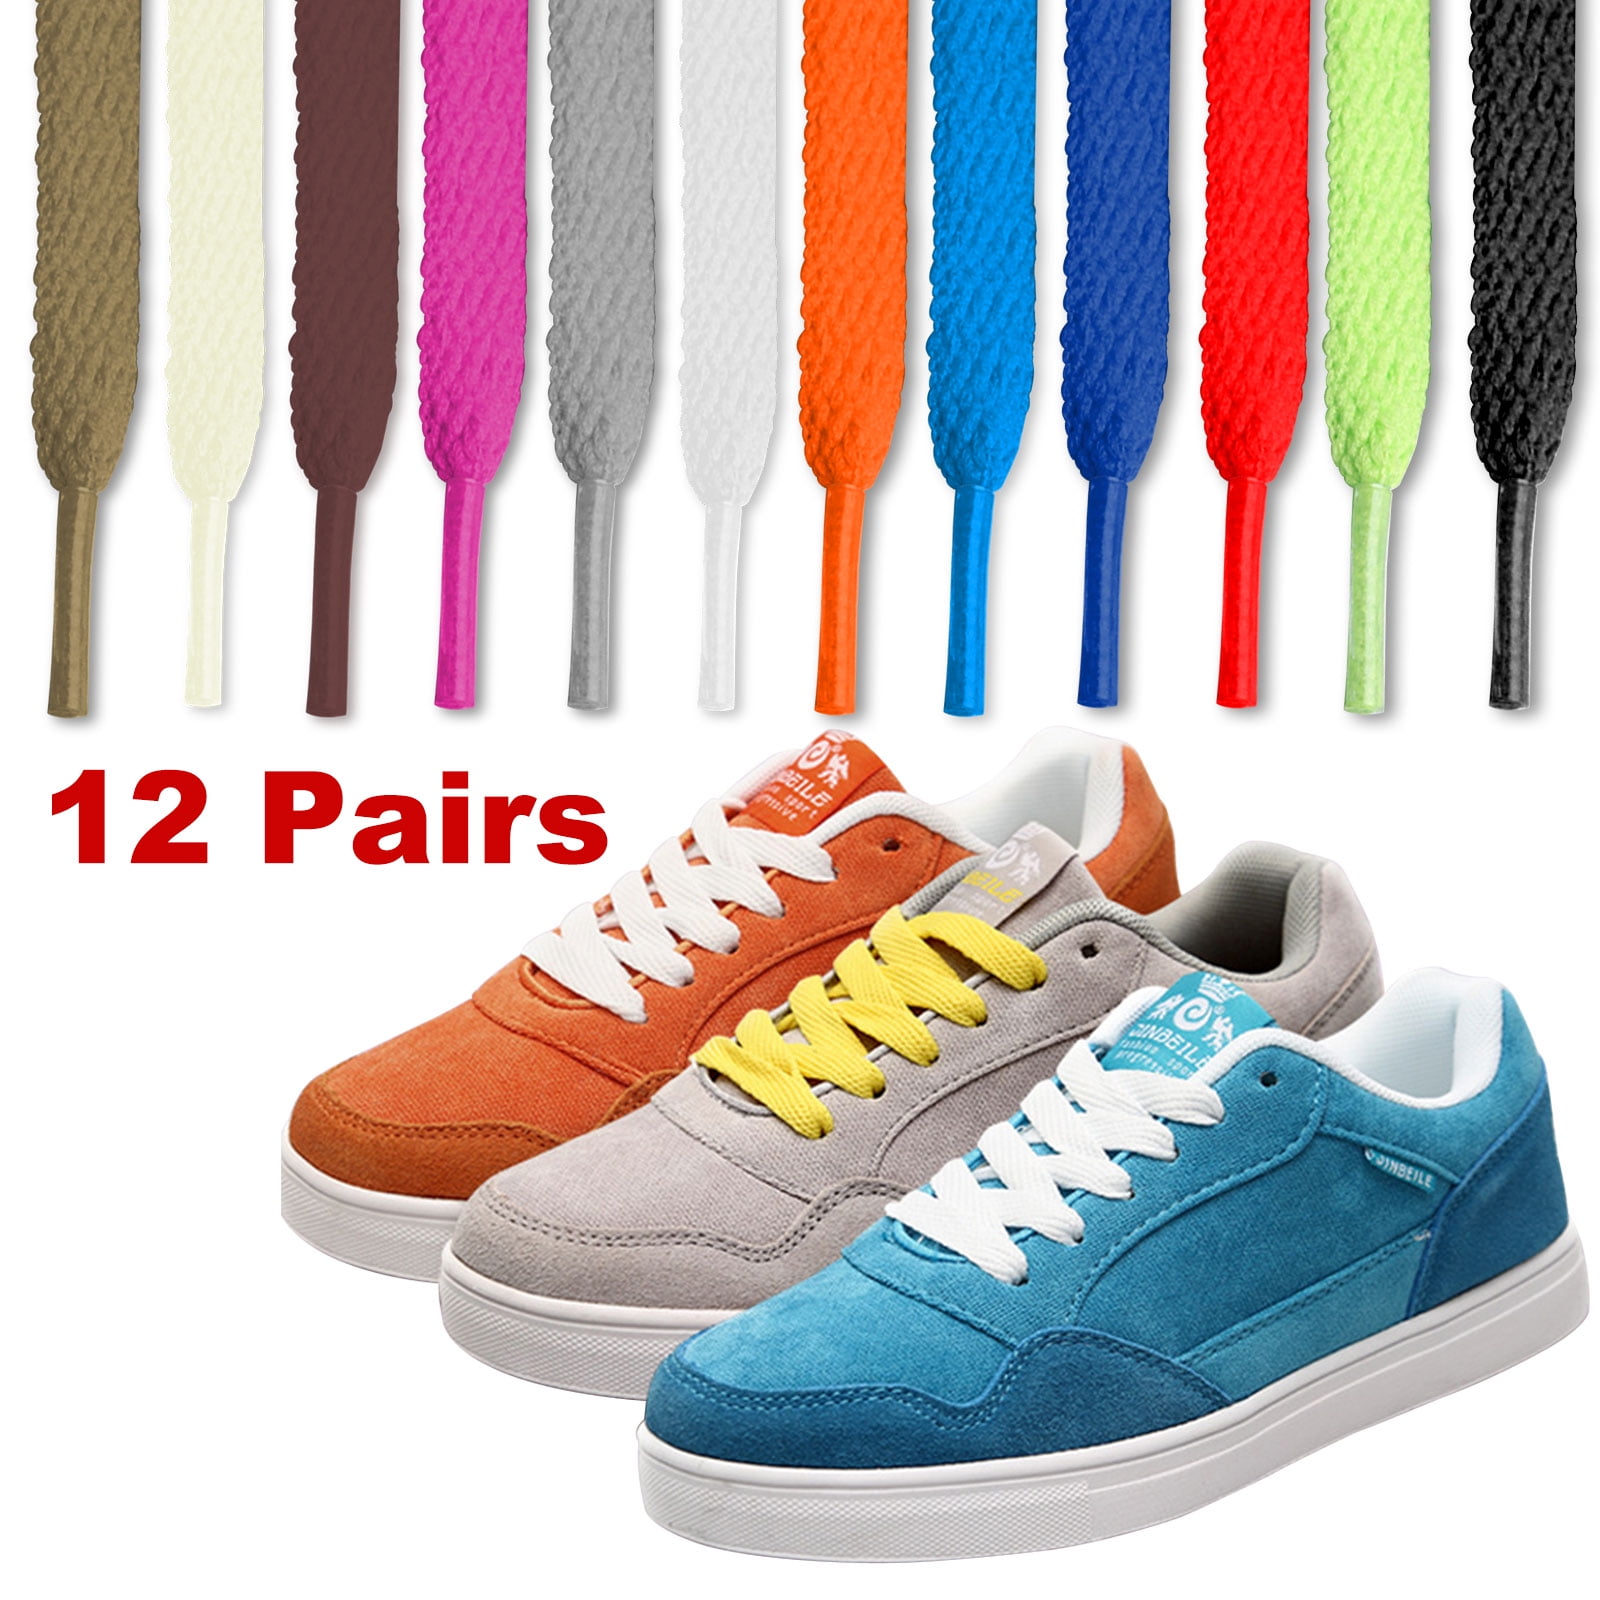 athletic shoelaces colors